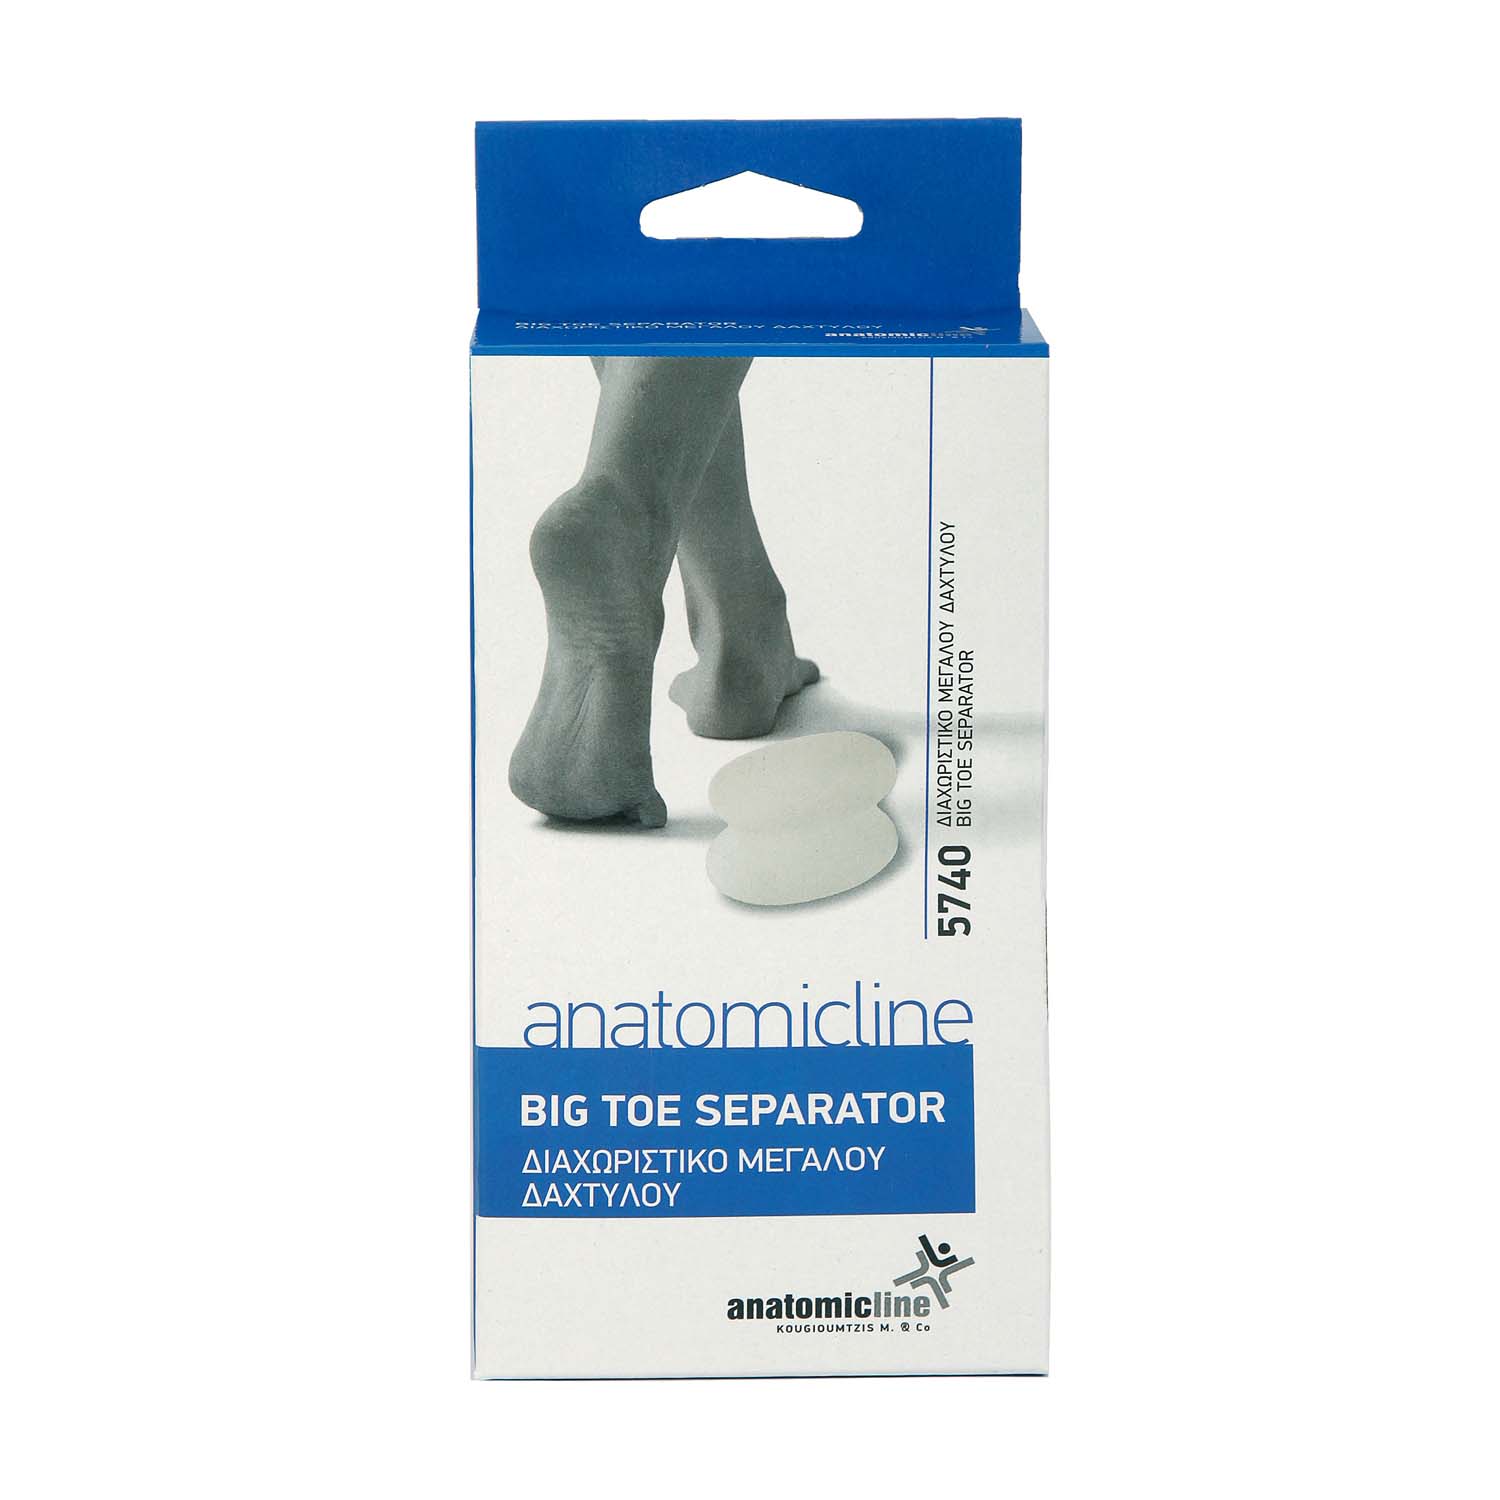 Big toe separator